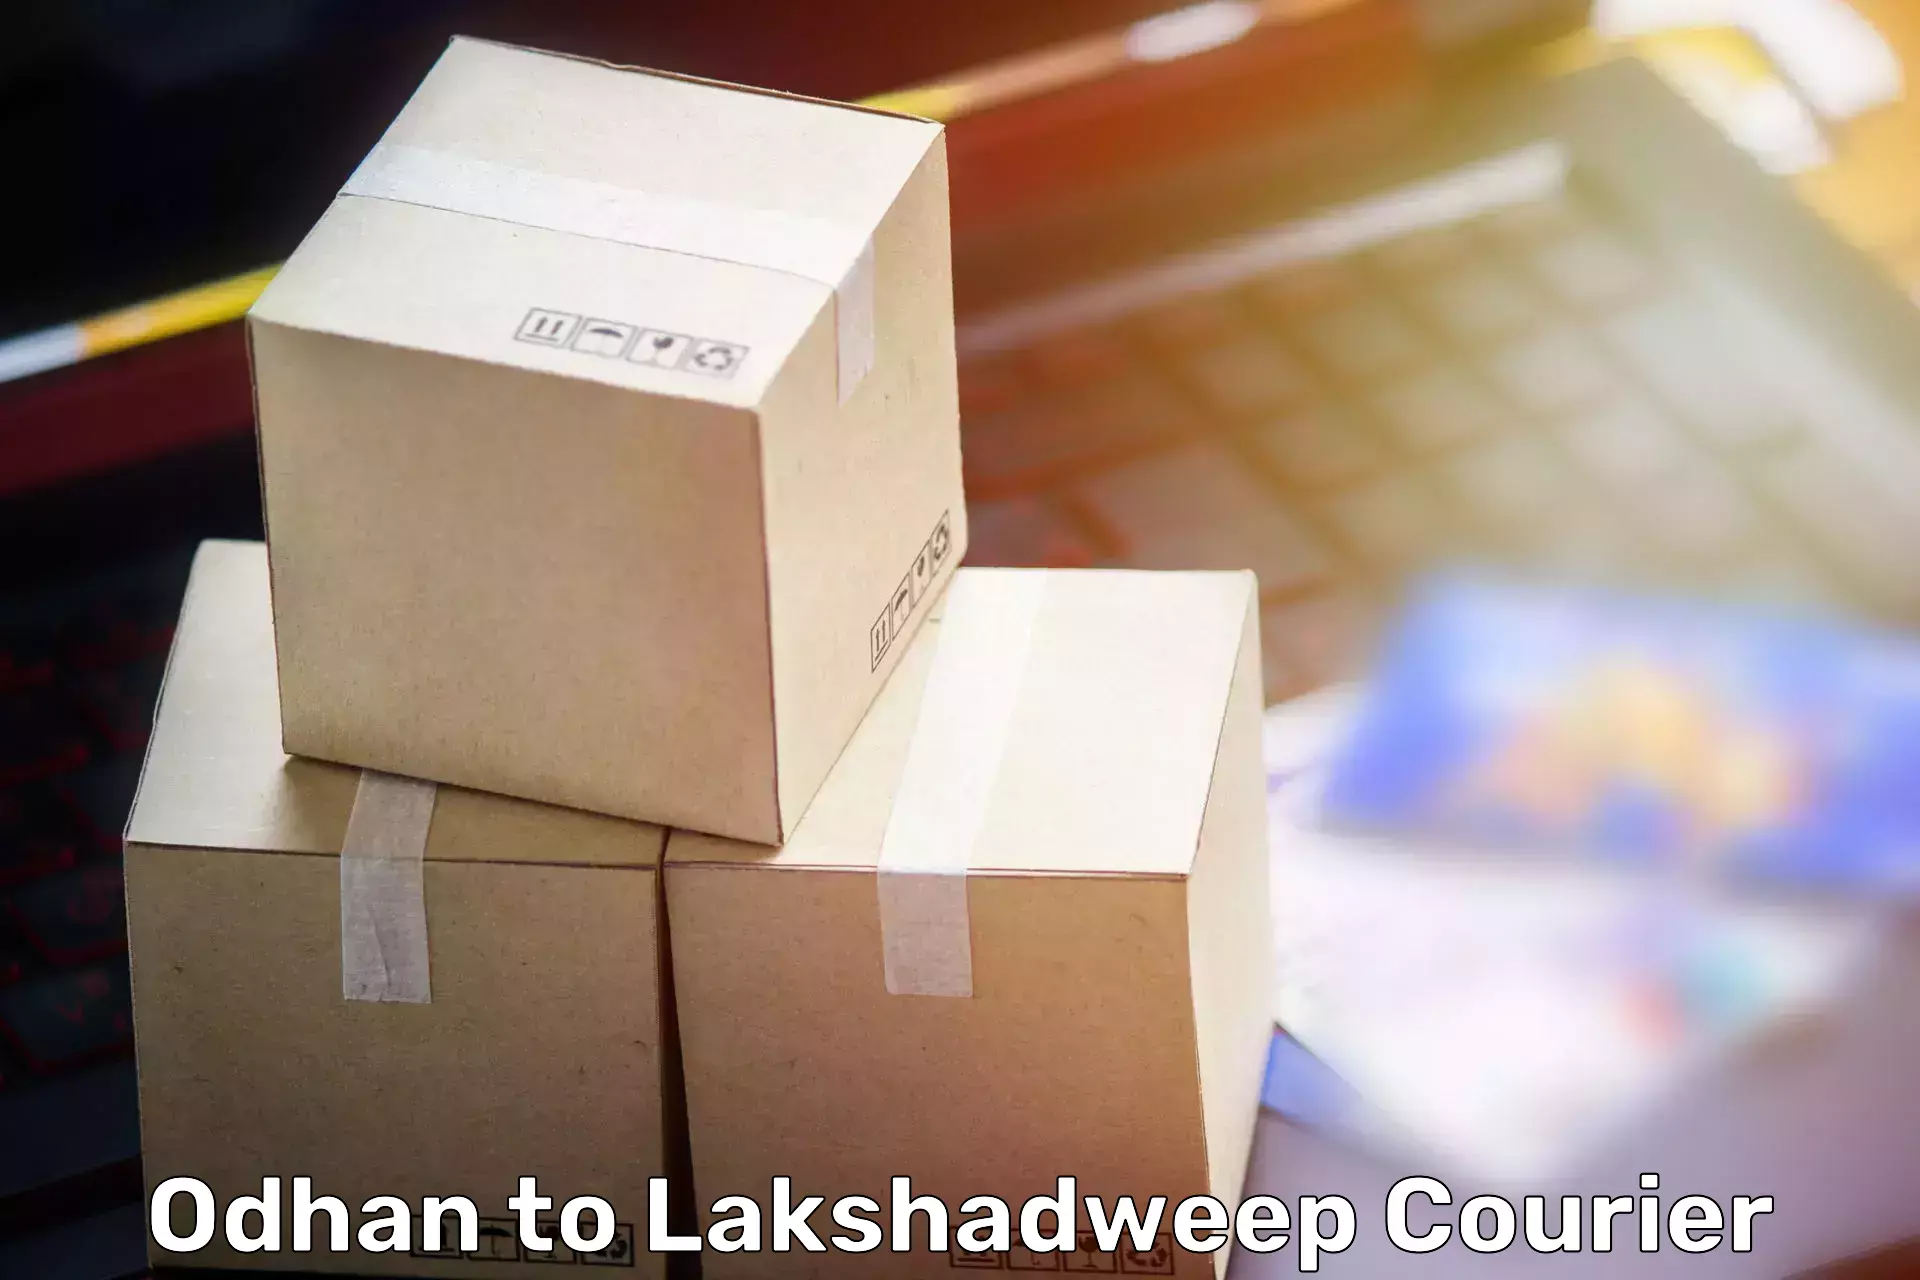 Furniture transport and storage Odhan to Lakshadweep